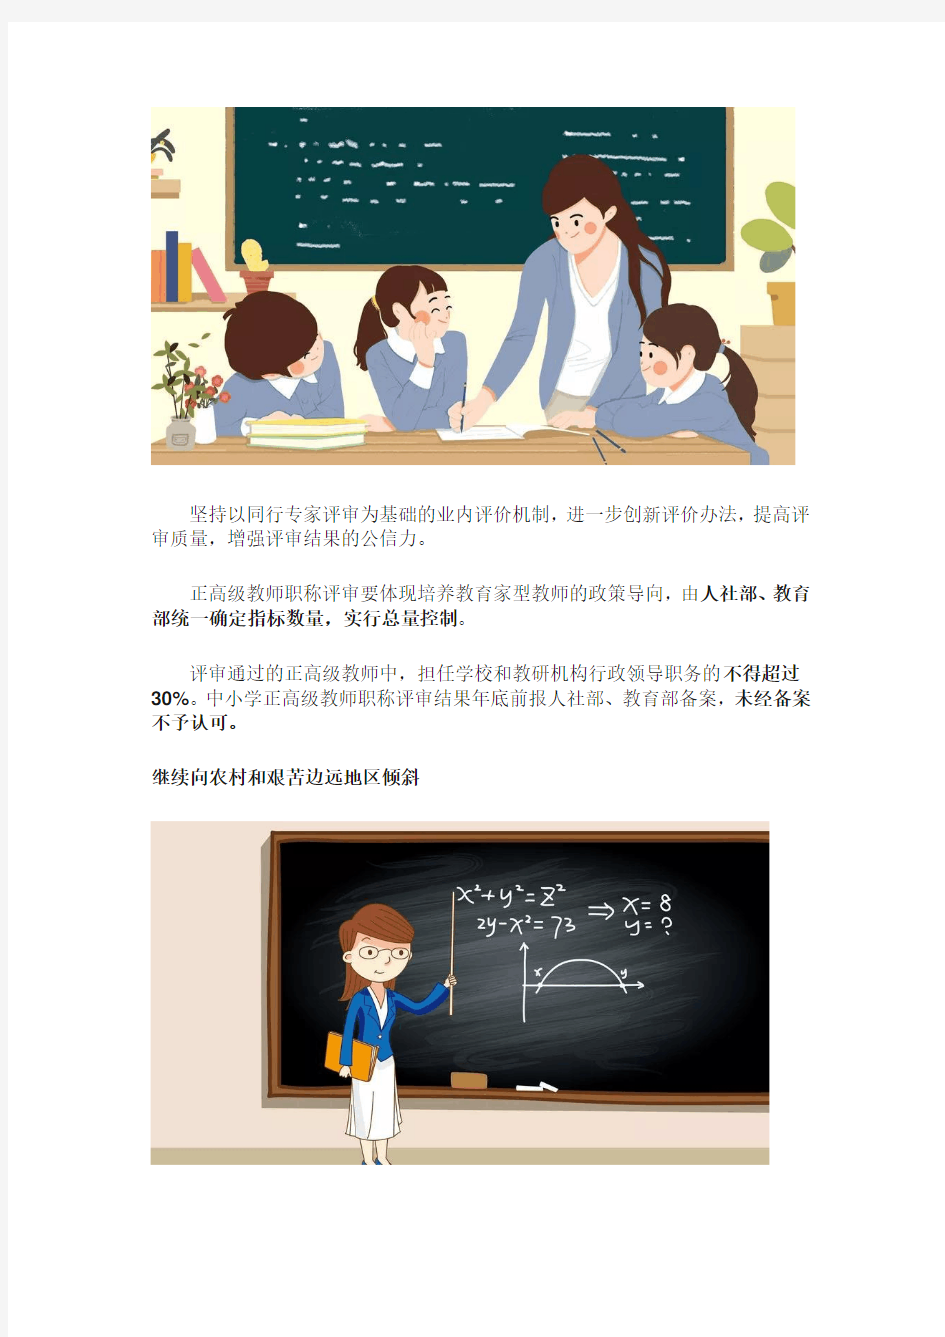 2019年,中小学教师职称评定